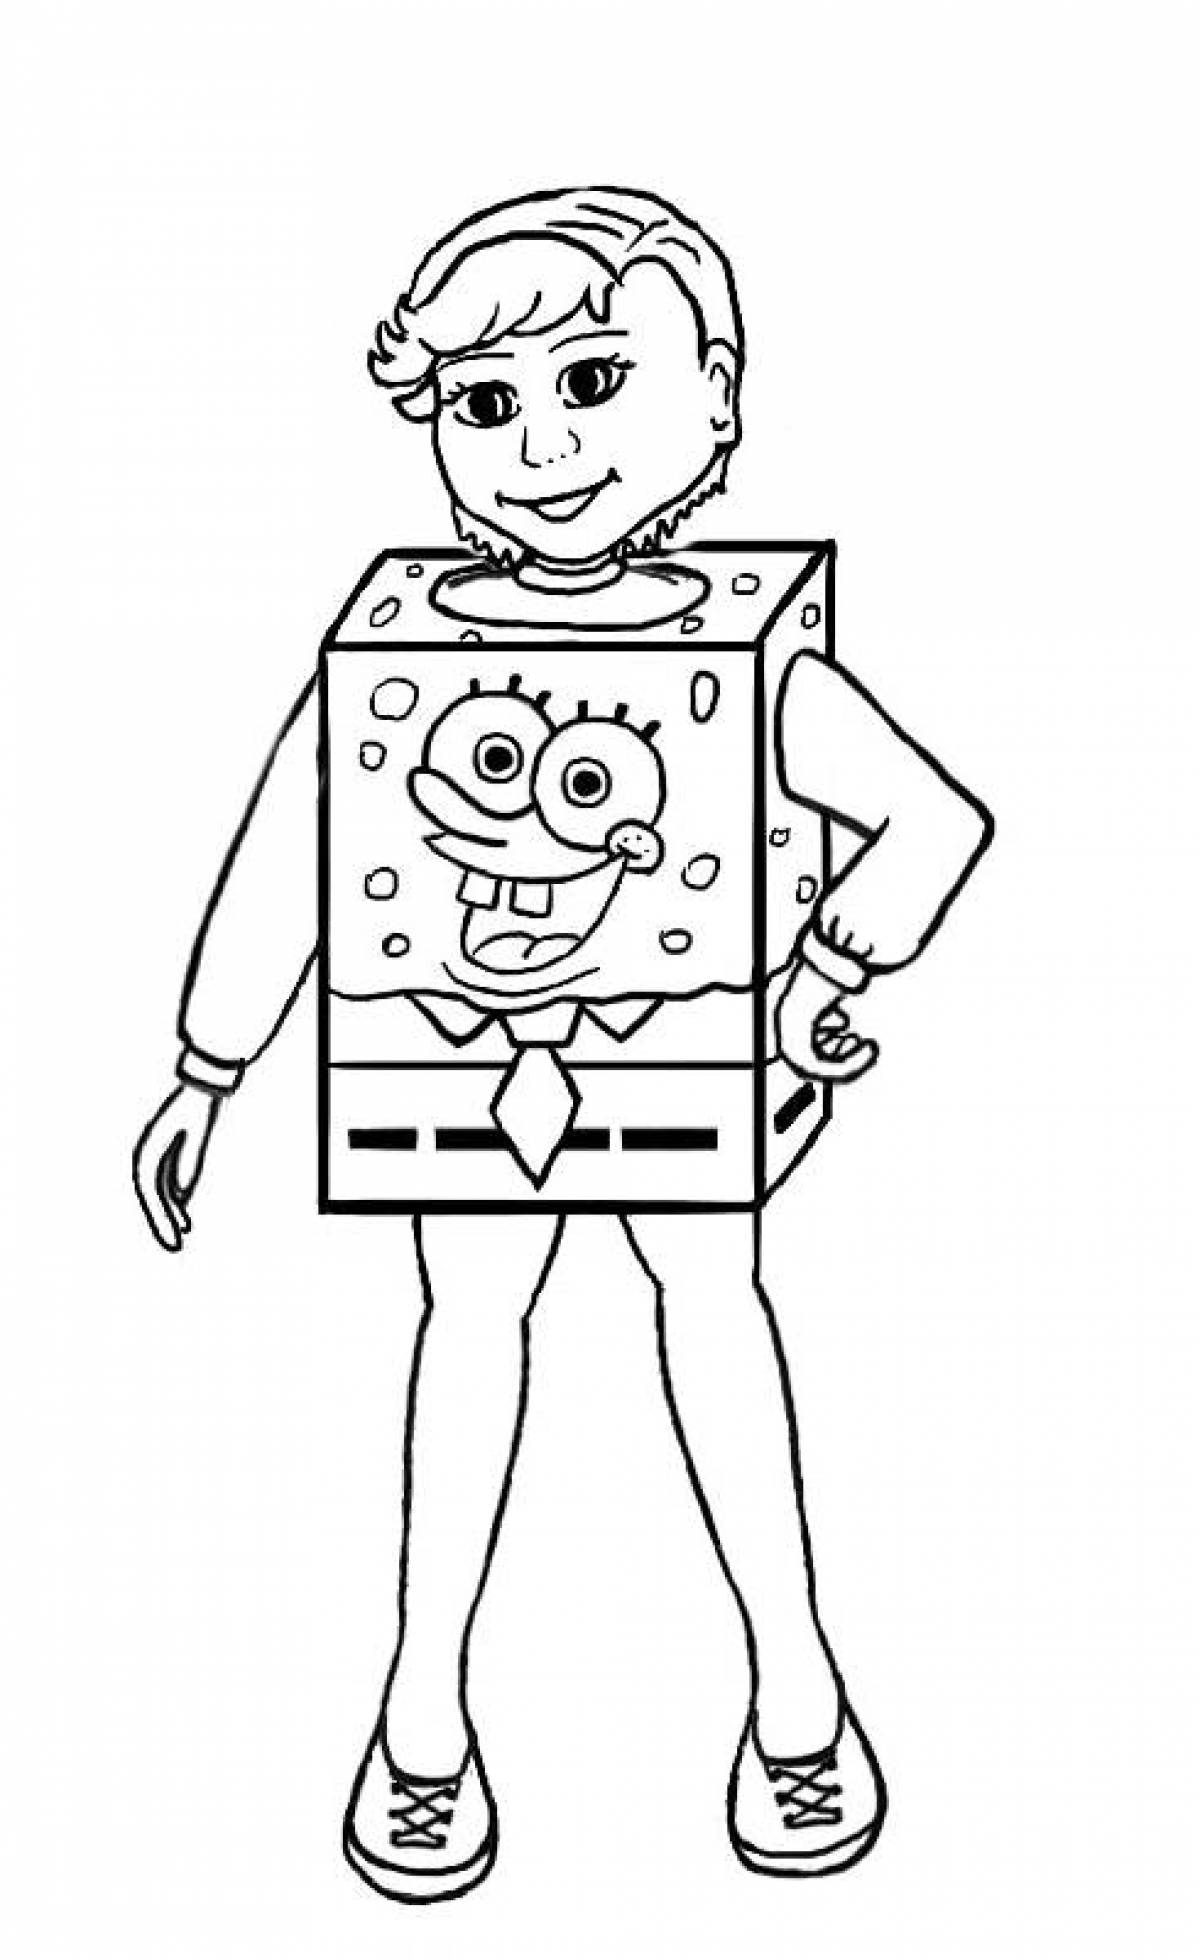 Sponge bob costume